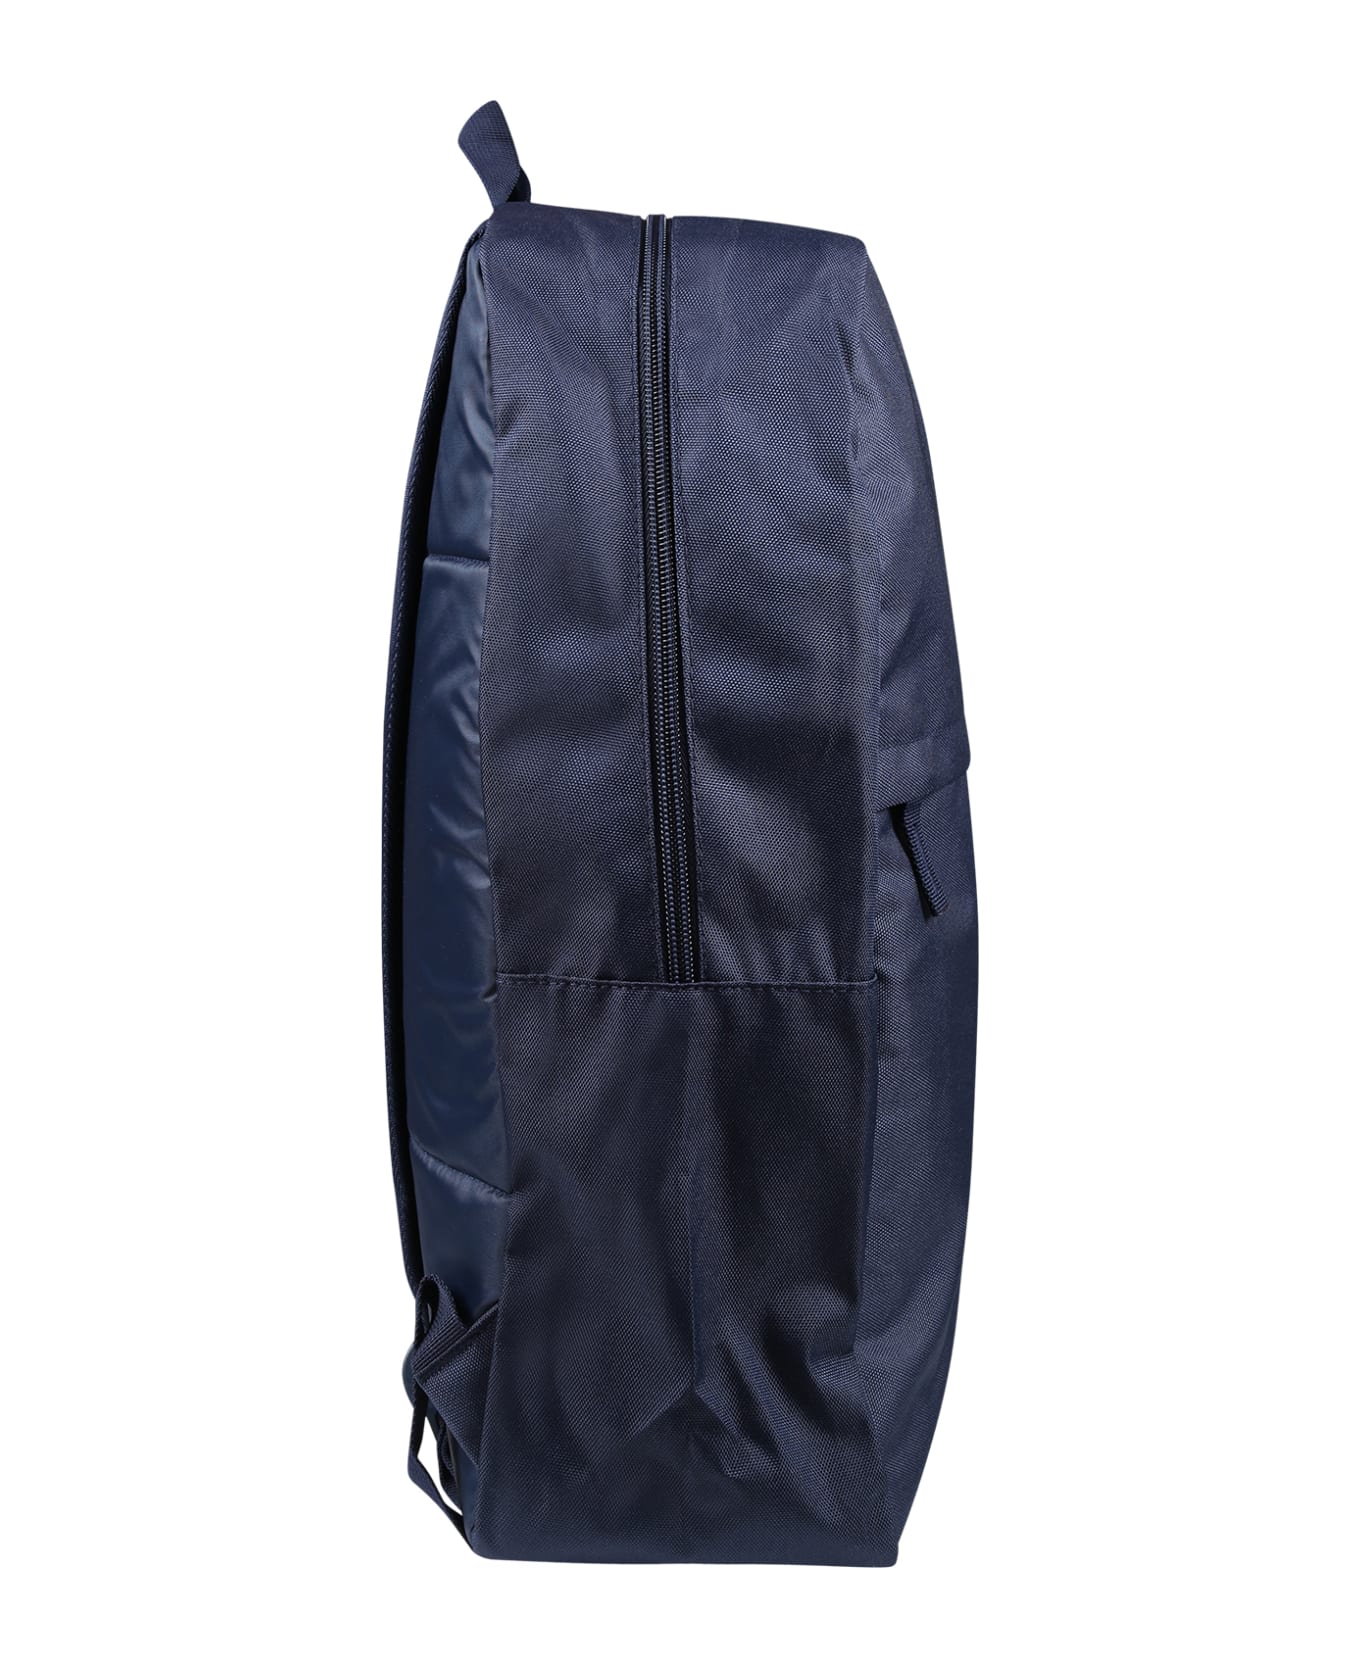 Levi's Blue Backpack For Kids - Blue